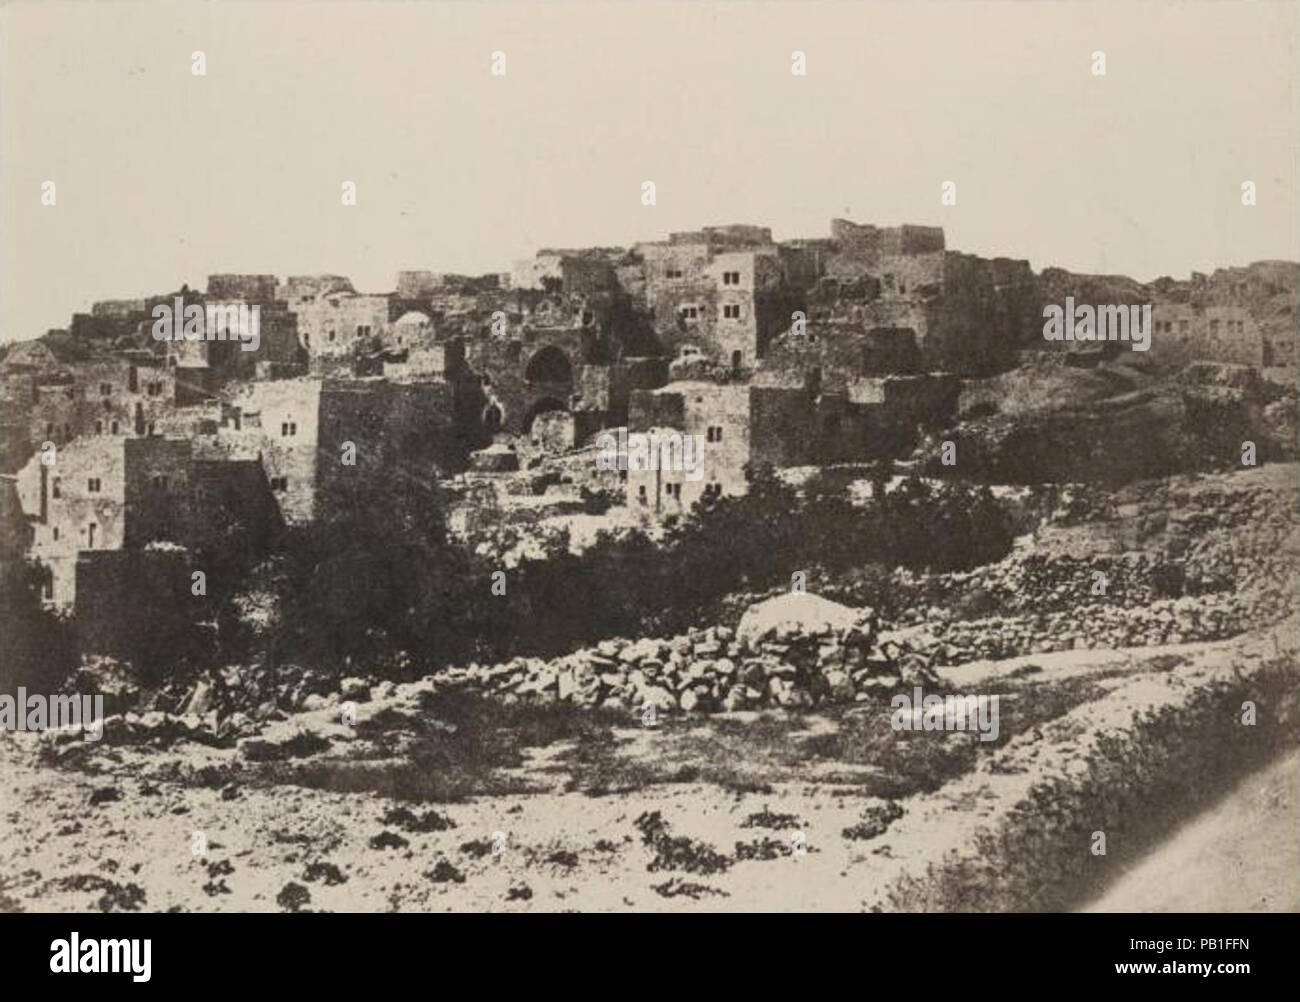 A. Salzmann - Beit-Lehem. Stock Photo